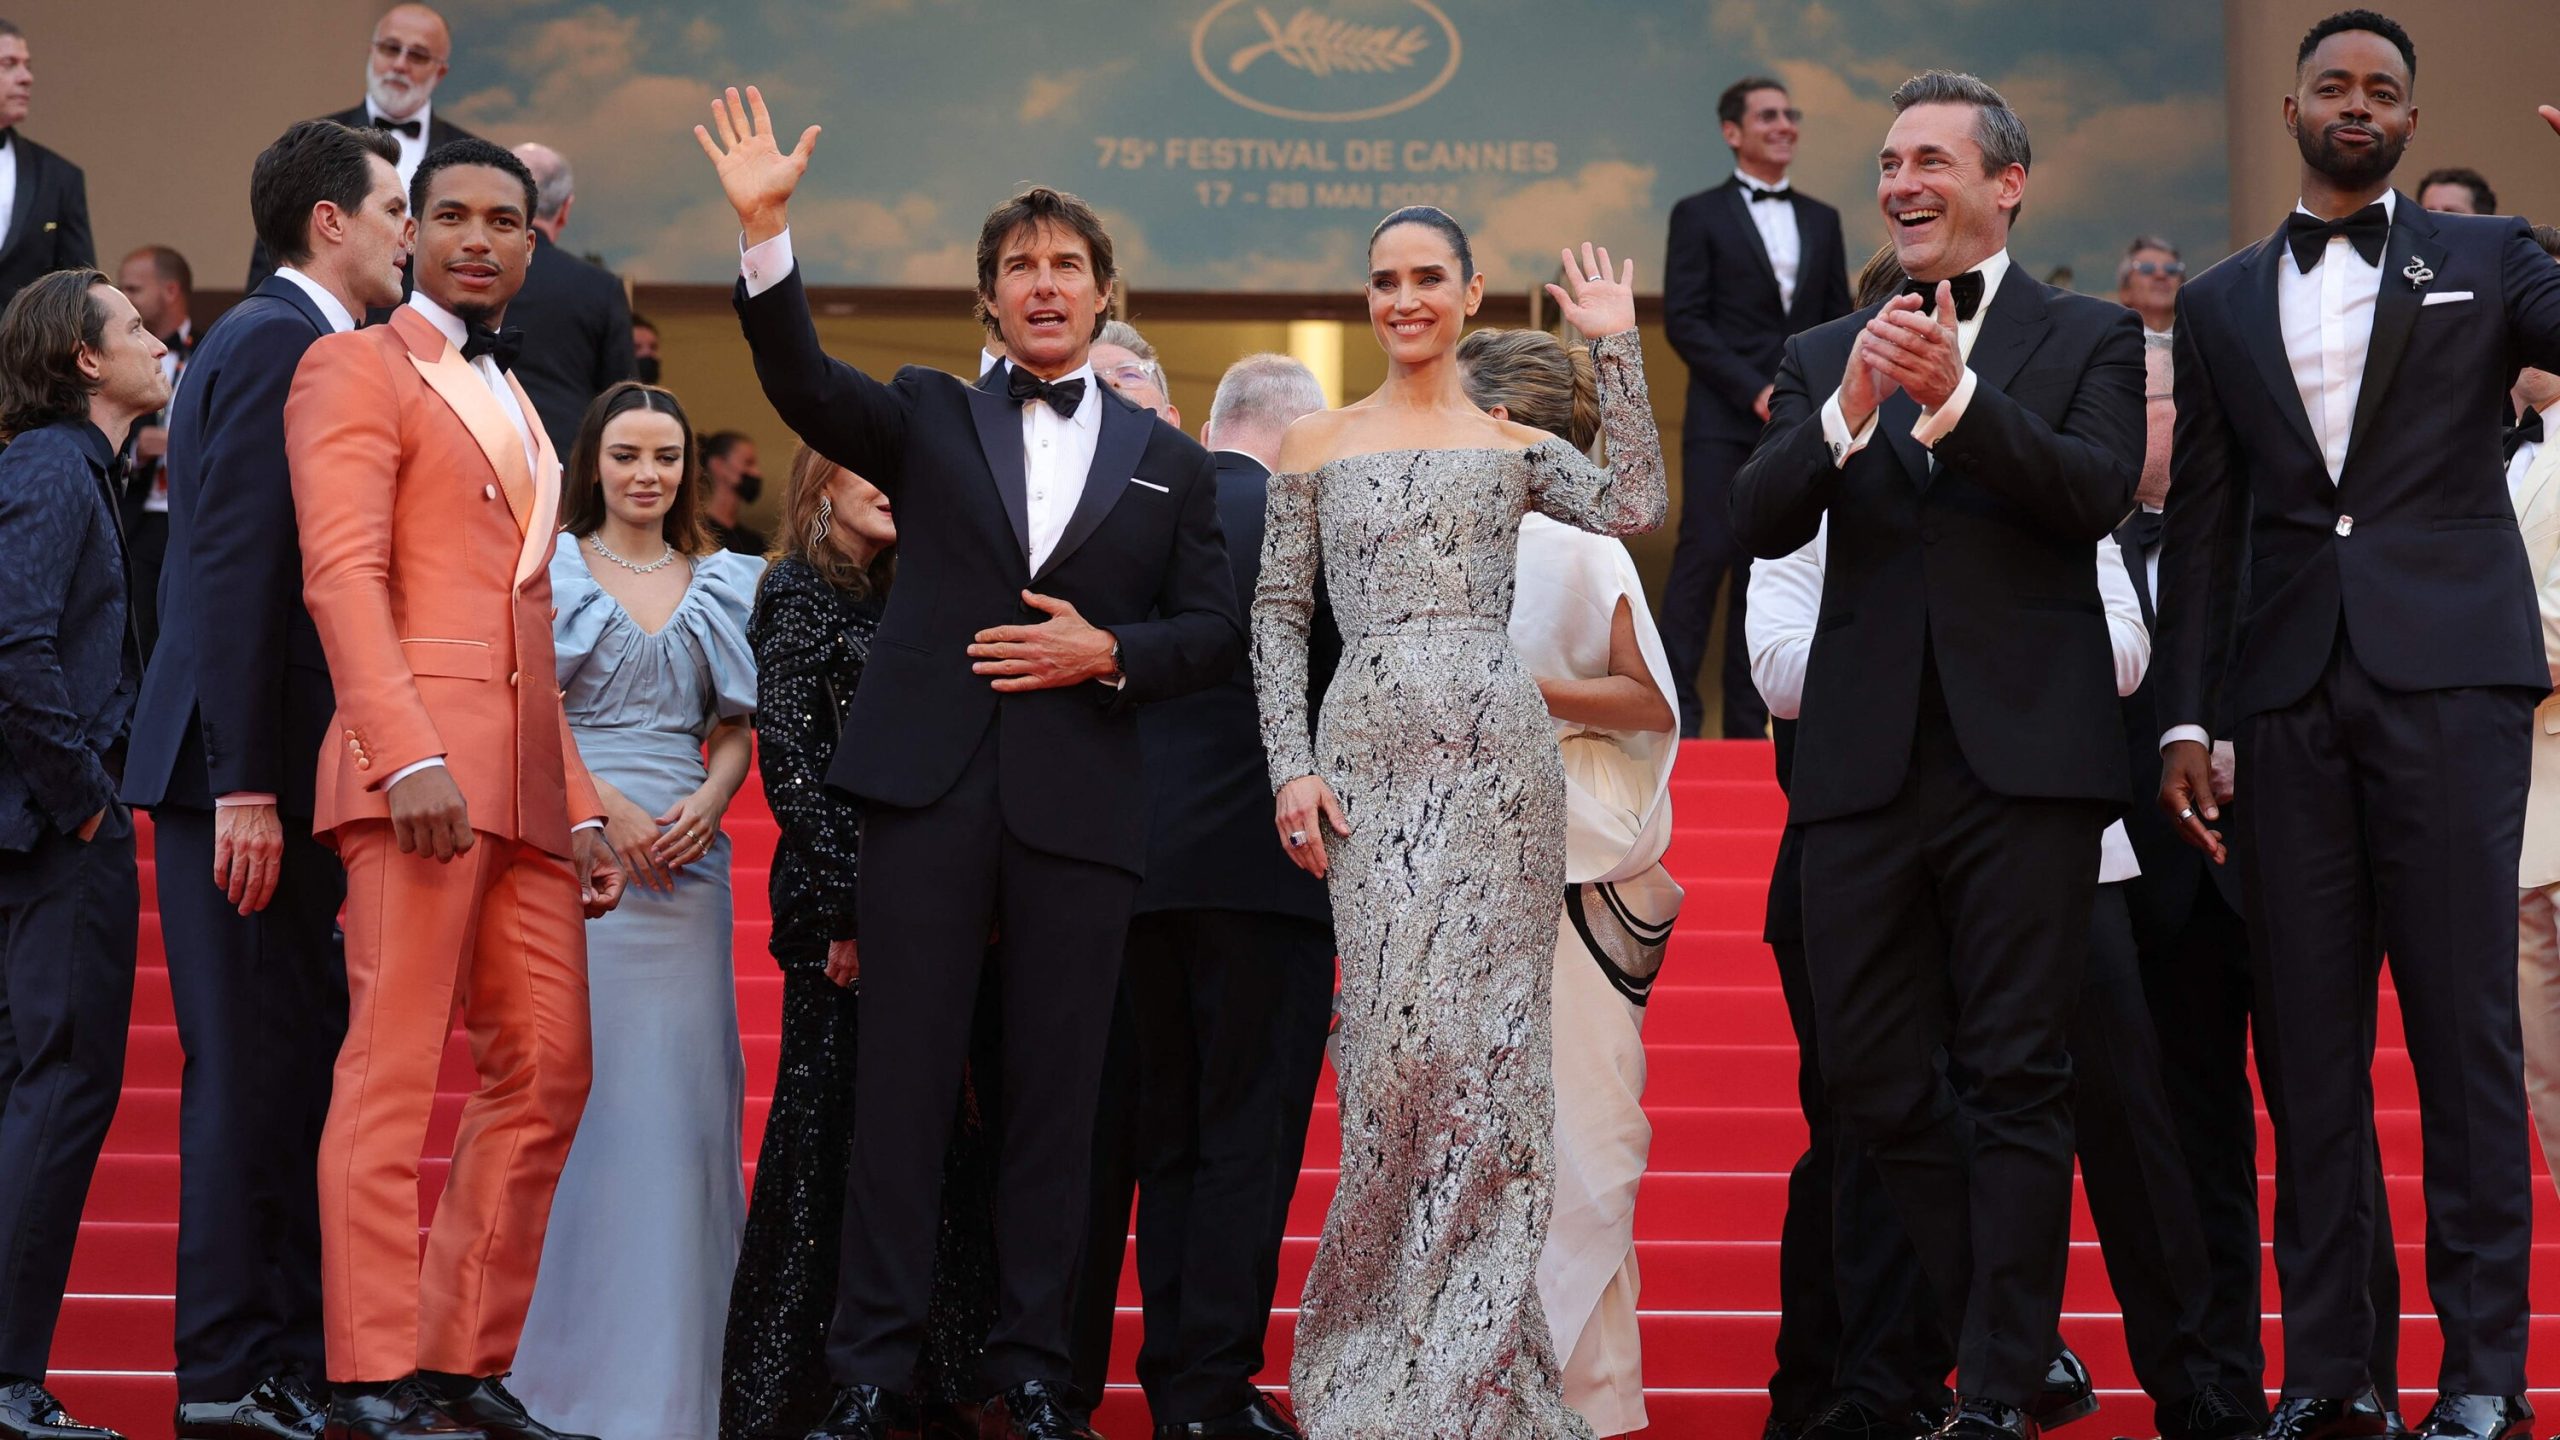 Top Gun: Maverick premiere launch at Cannes 2022